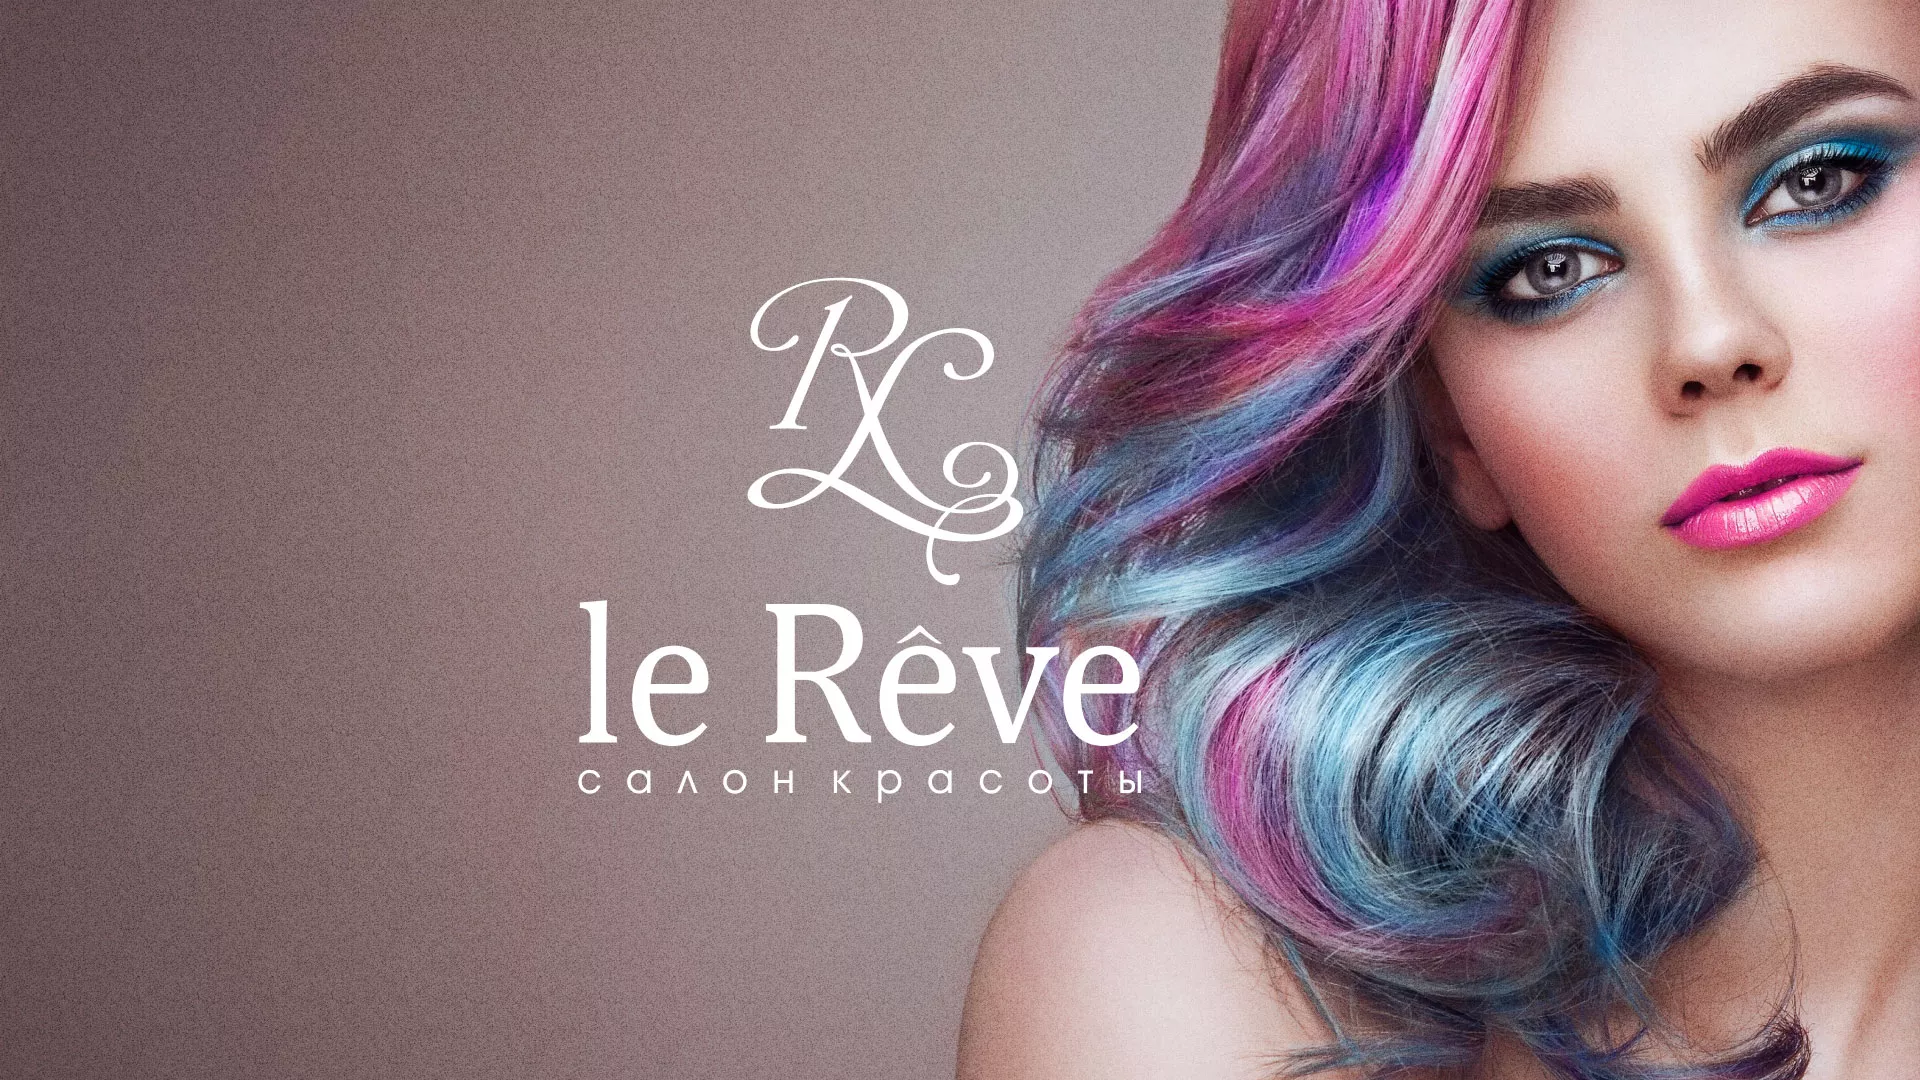 Создание сайта для салона красоты «Le Reve» в Урюпинске